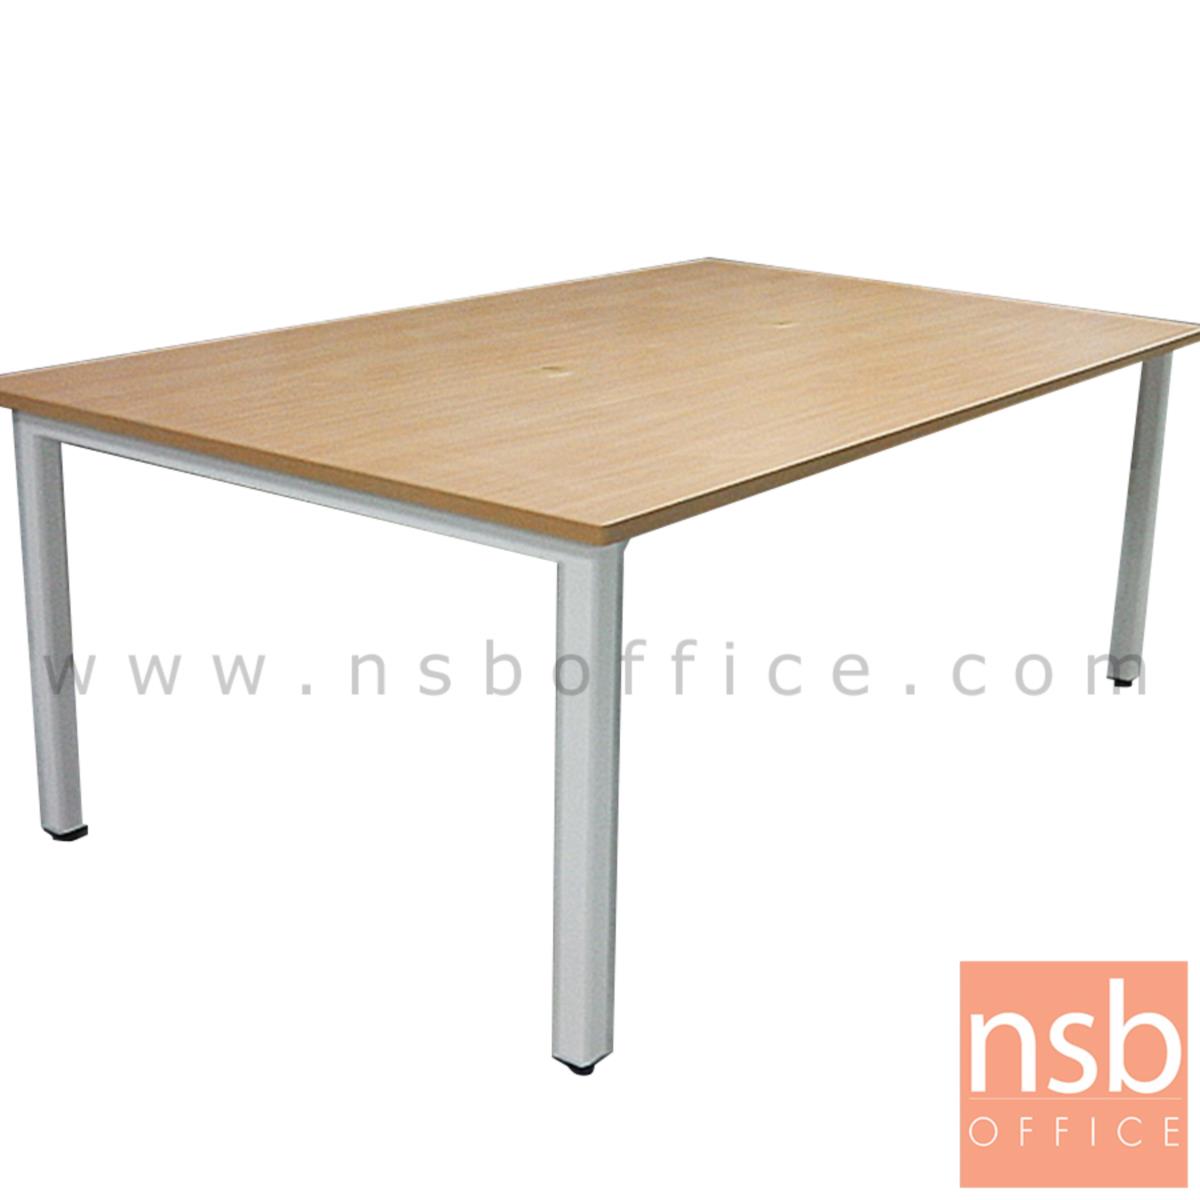 โต๊ะประชุมทรงสี่เหลี่ยม  ขนาด 150W, 180W, 200W, 240W cm.  ขาเหล็ก